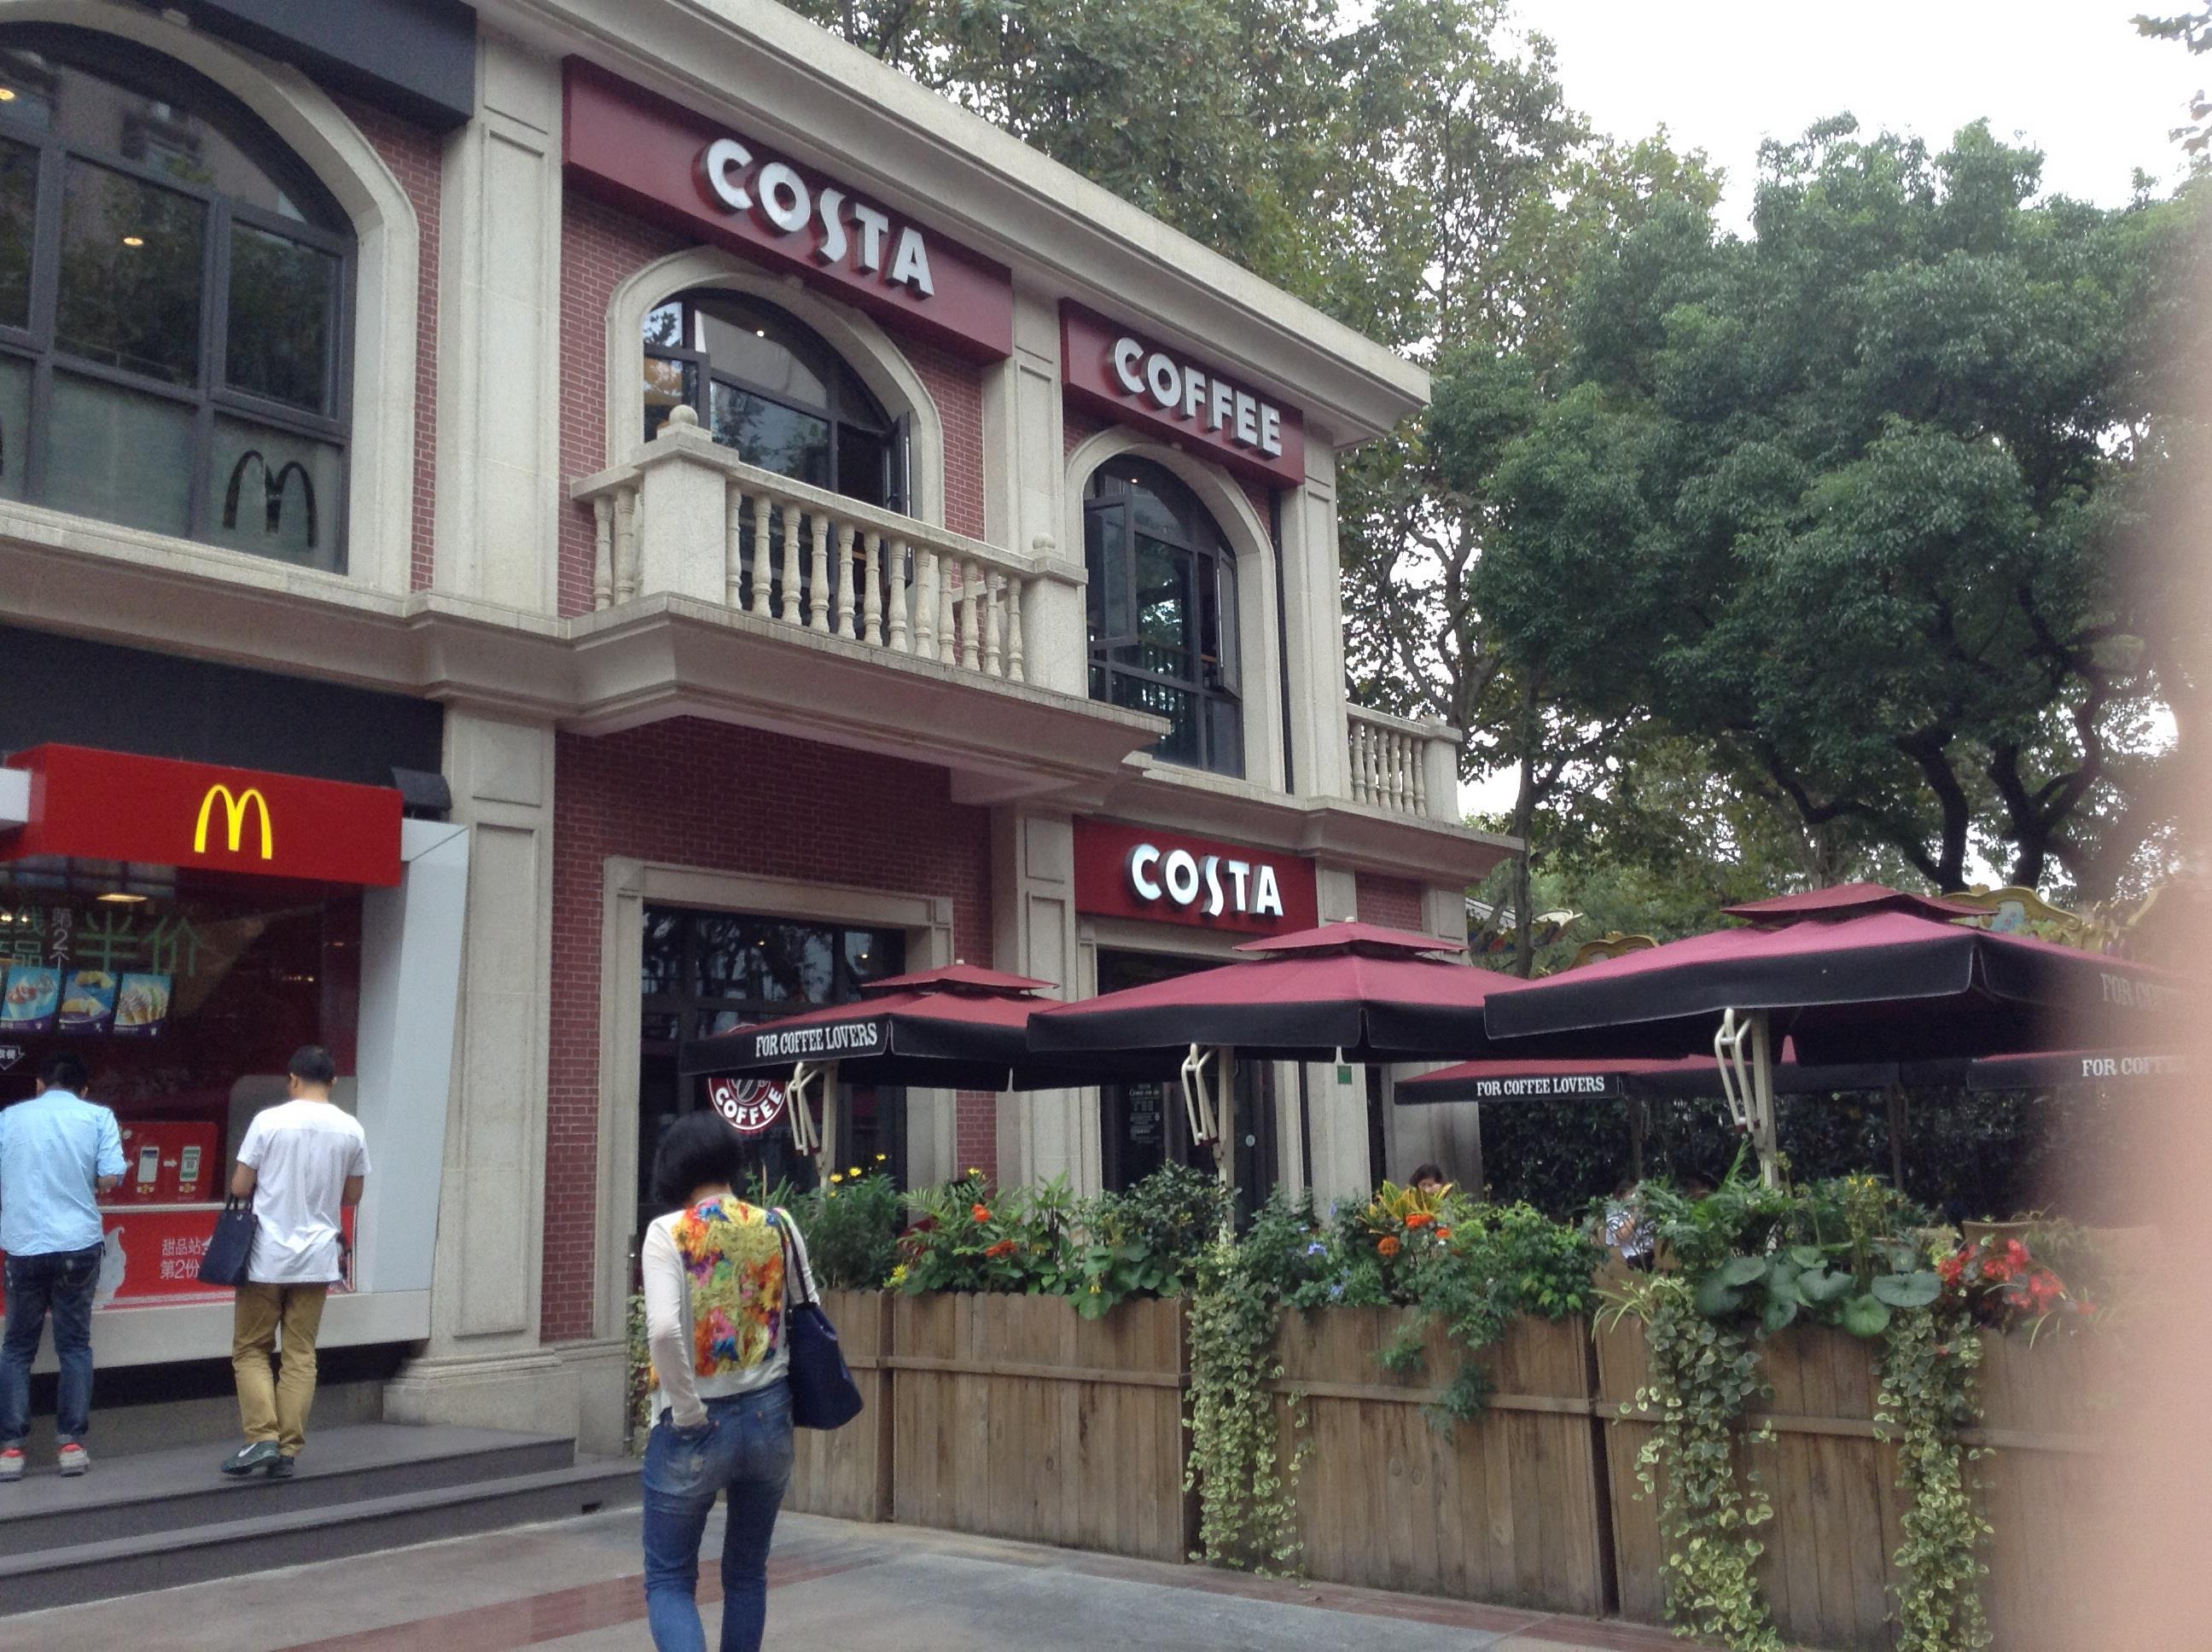 这家costa咖啡店地理位置很好,就在鲁迅公园大门旁边,一楼外面有露天